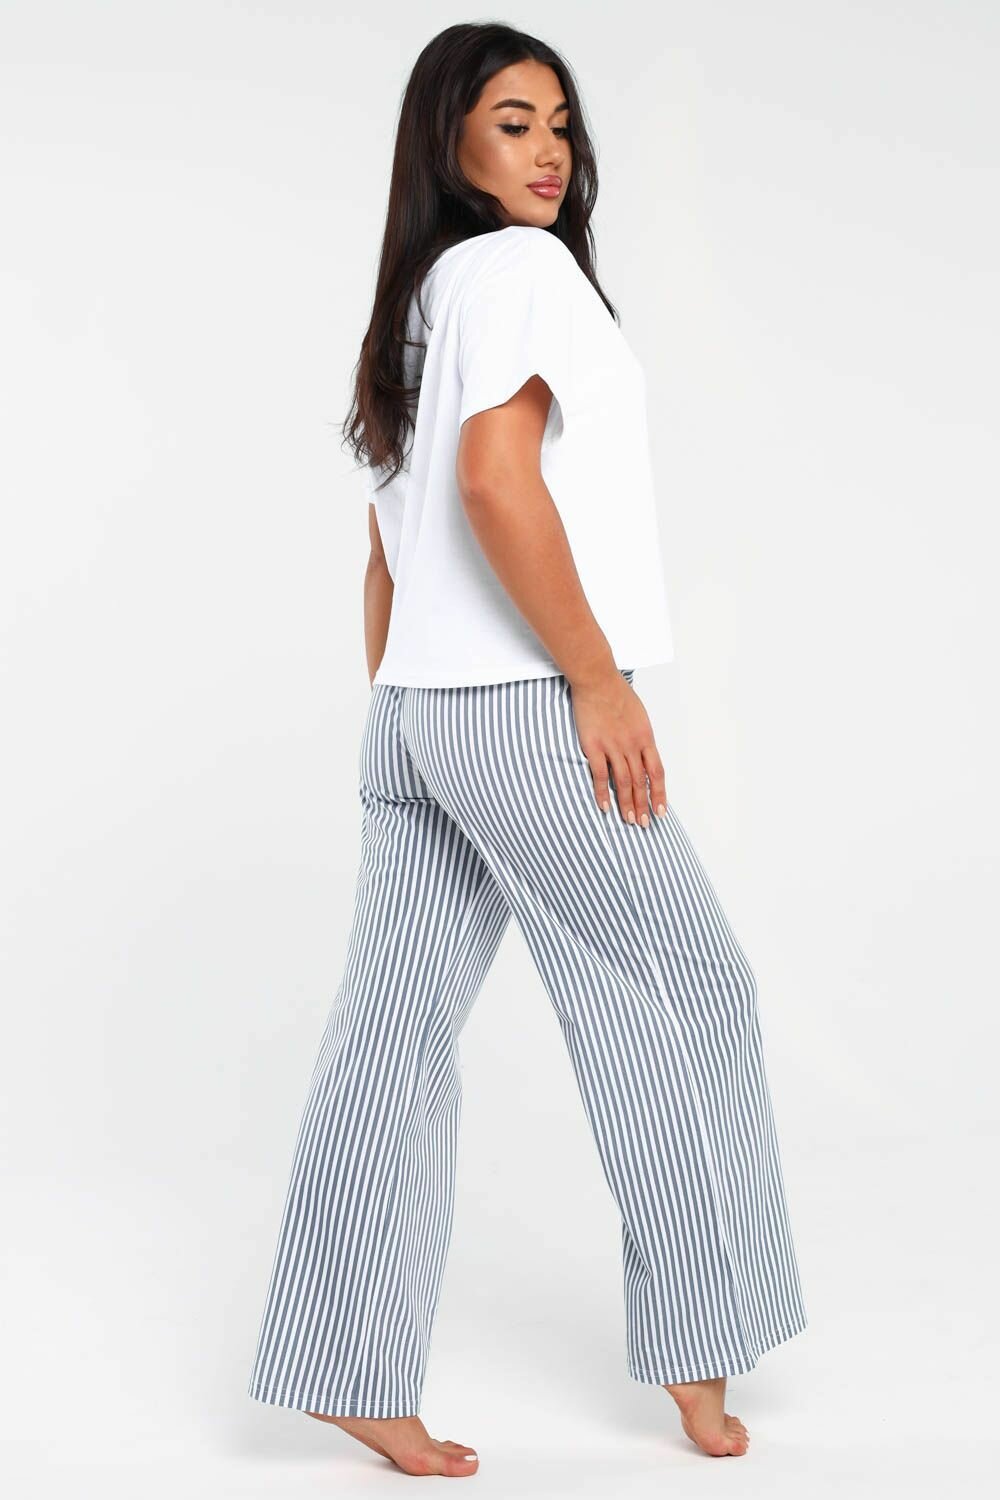 Пижама DIANIDA М-799 размеры 44-54 (48, светло-серый) - фотография № 3